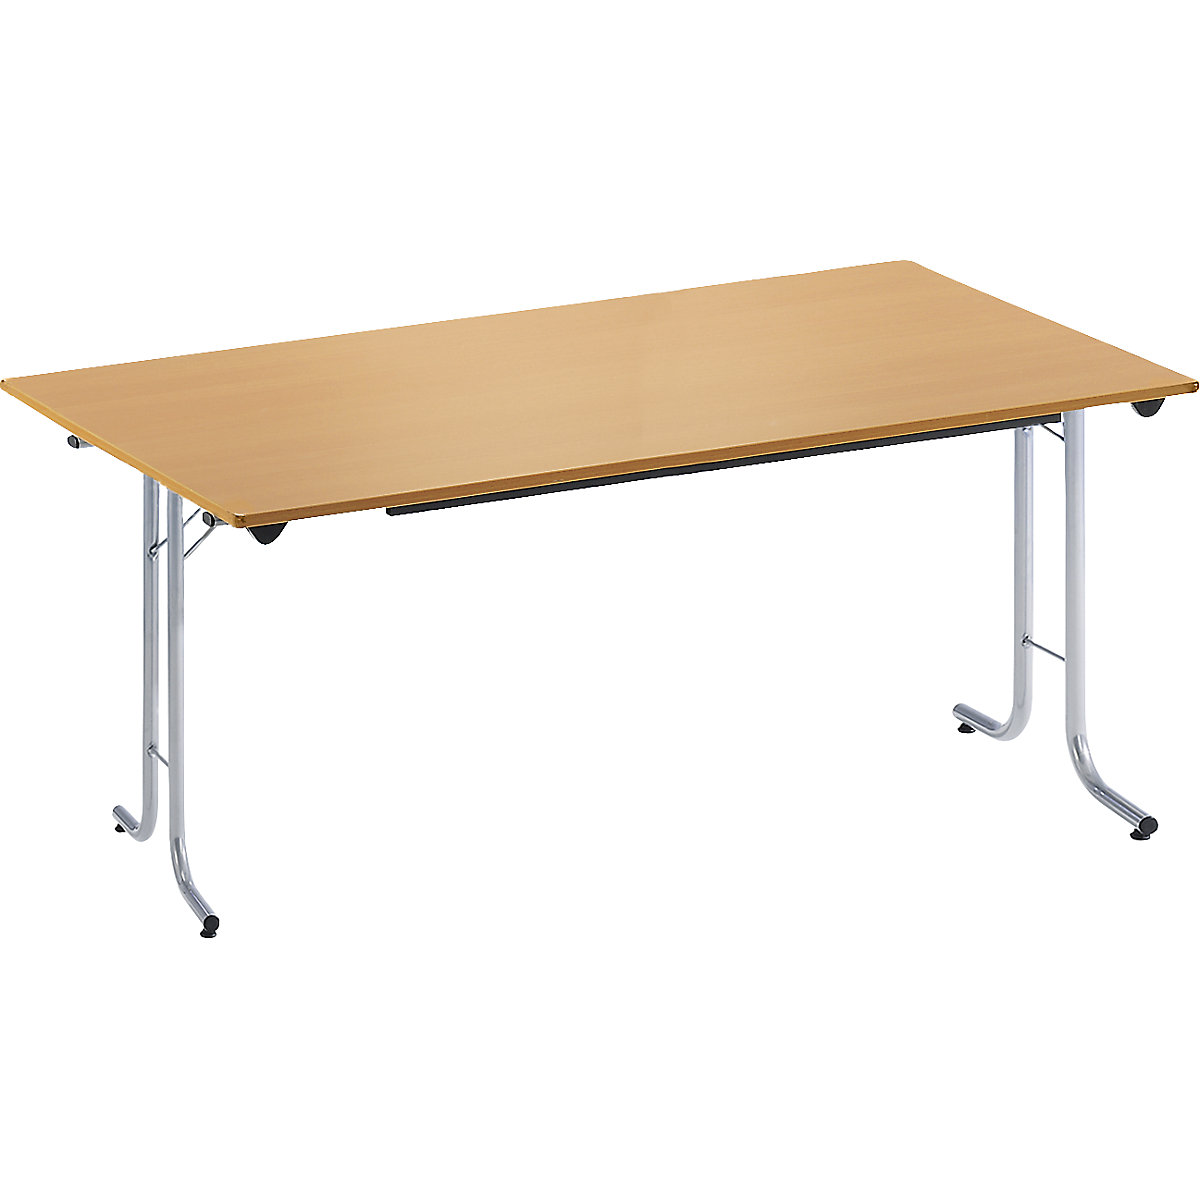 Sklápací stôl, so zaoblenými hranami, podstavec z kruhovej rúrky, tvar dosky obdĺžnikový, 1400 x 700 mm, podstavec strieborná, doska vzor buk-4